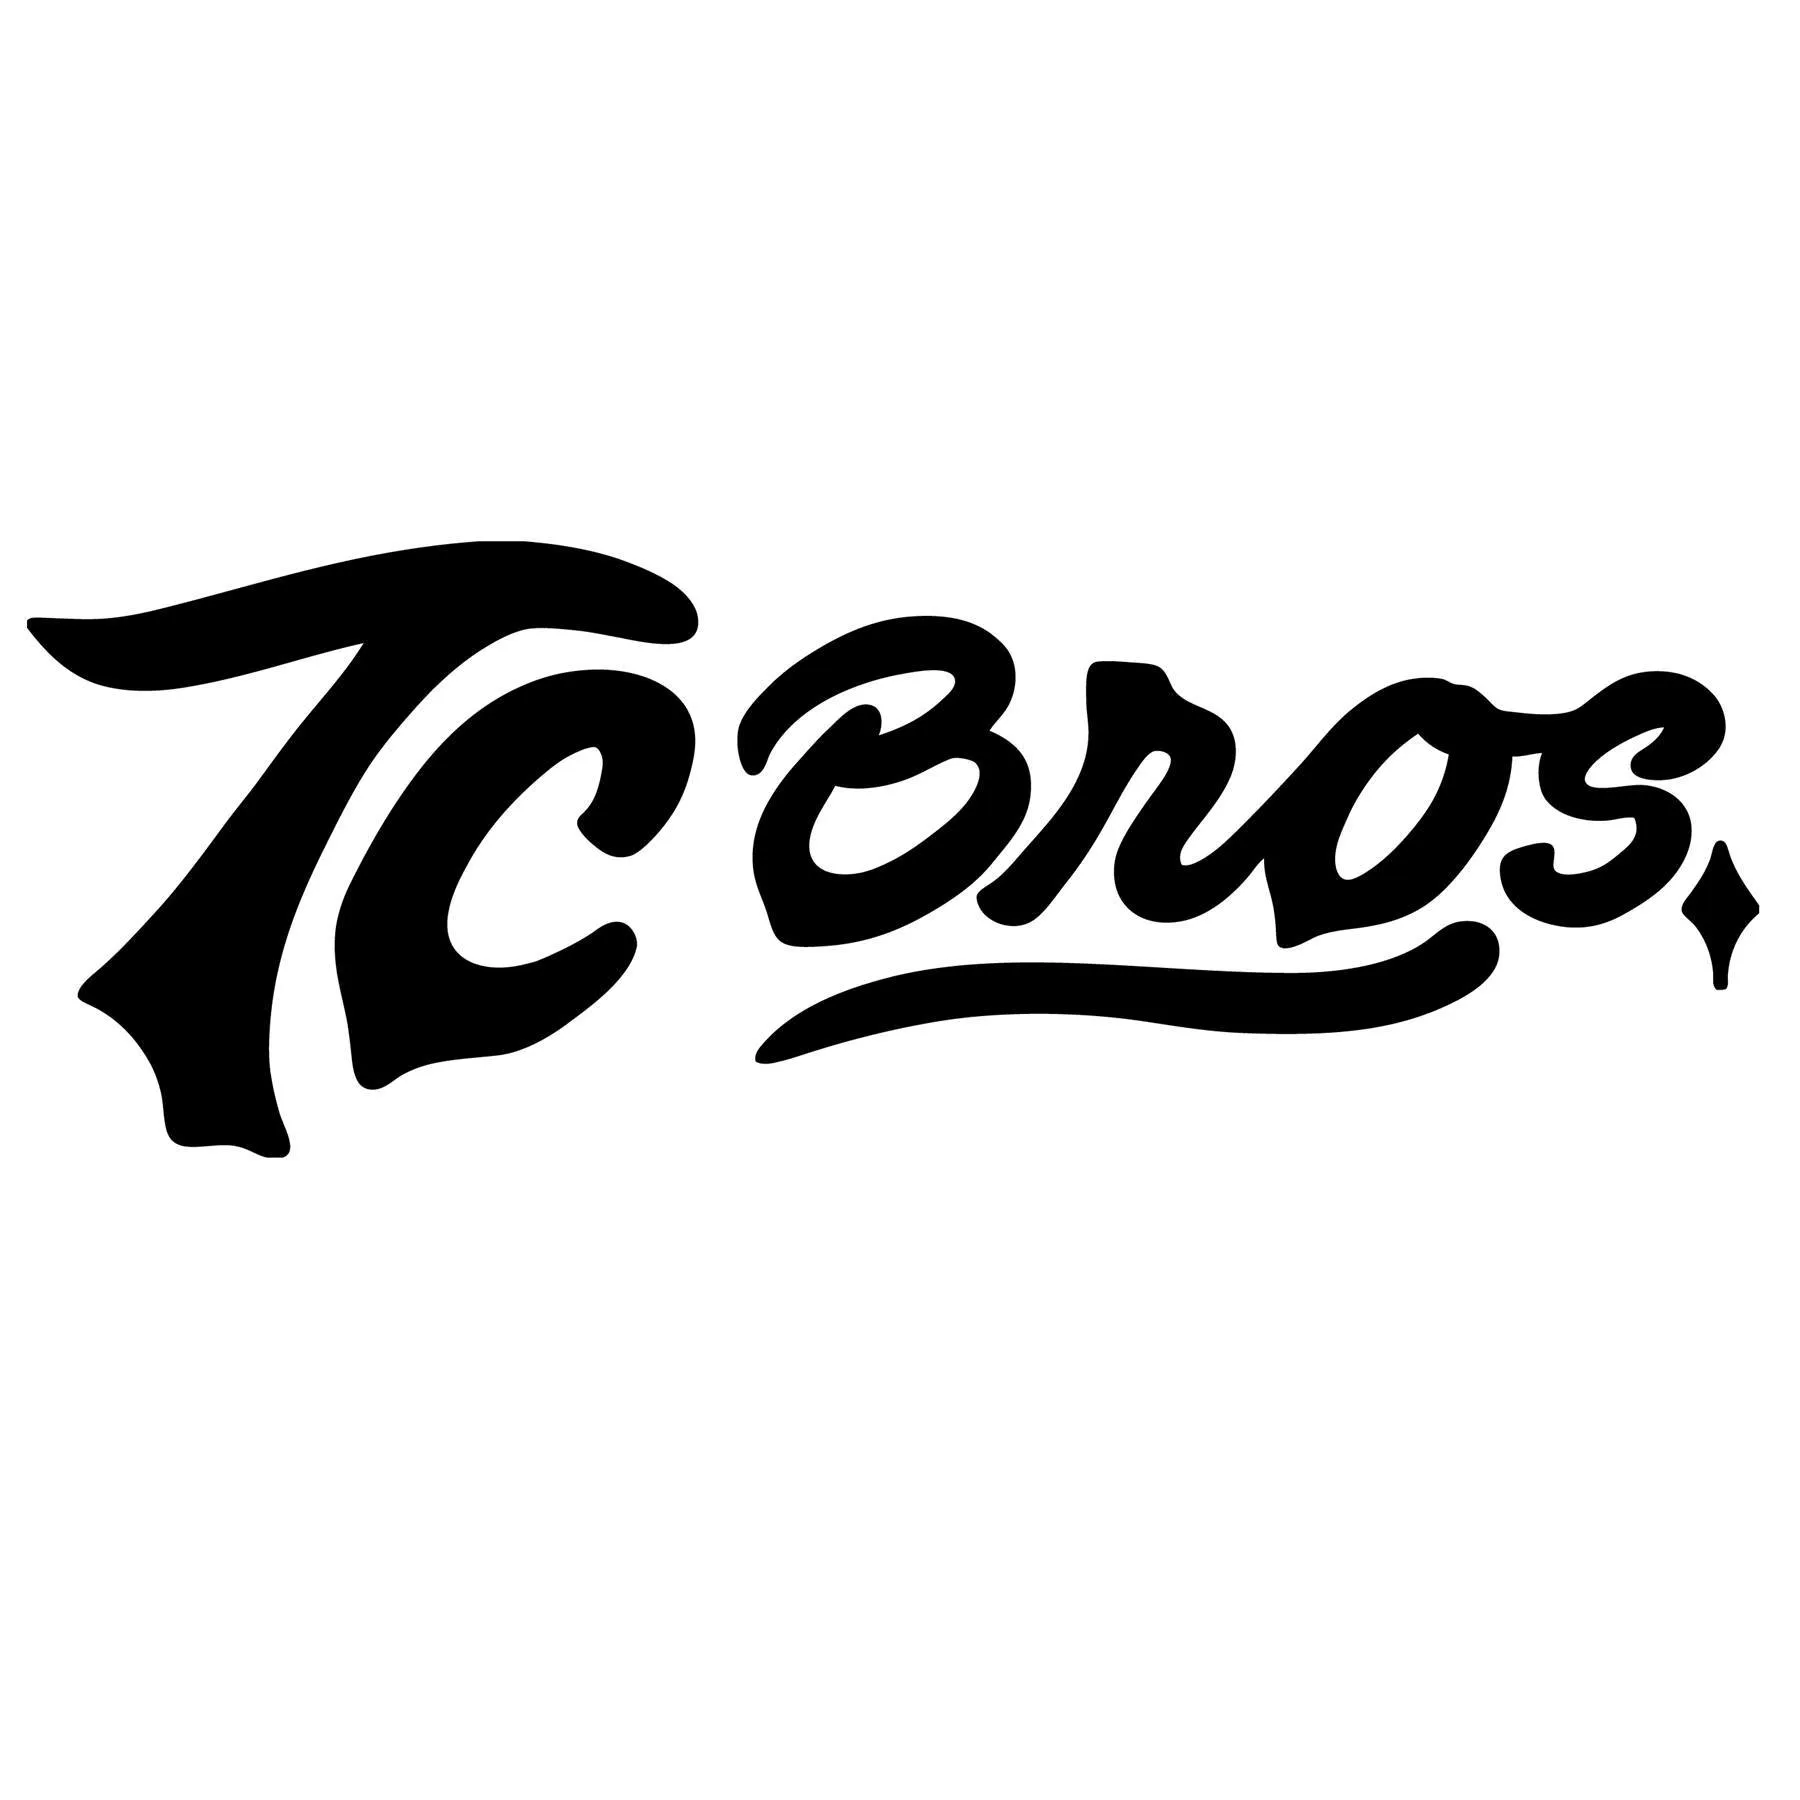  TC Bros Promo Code